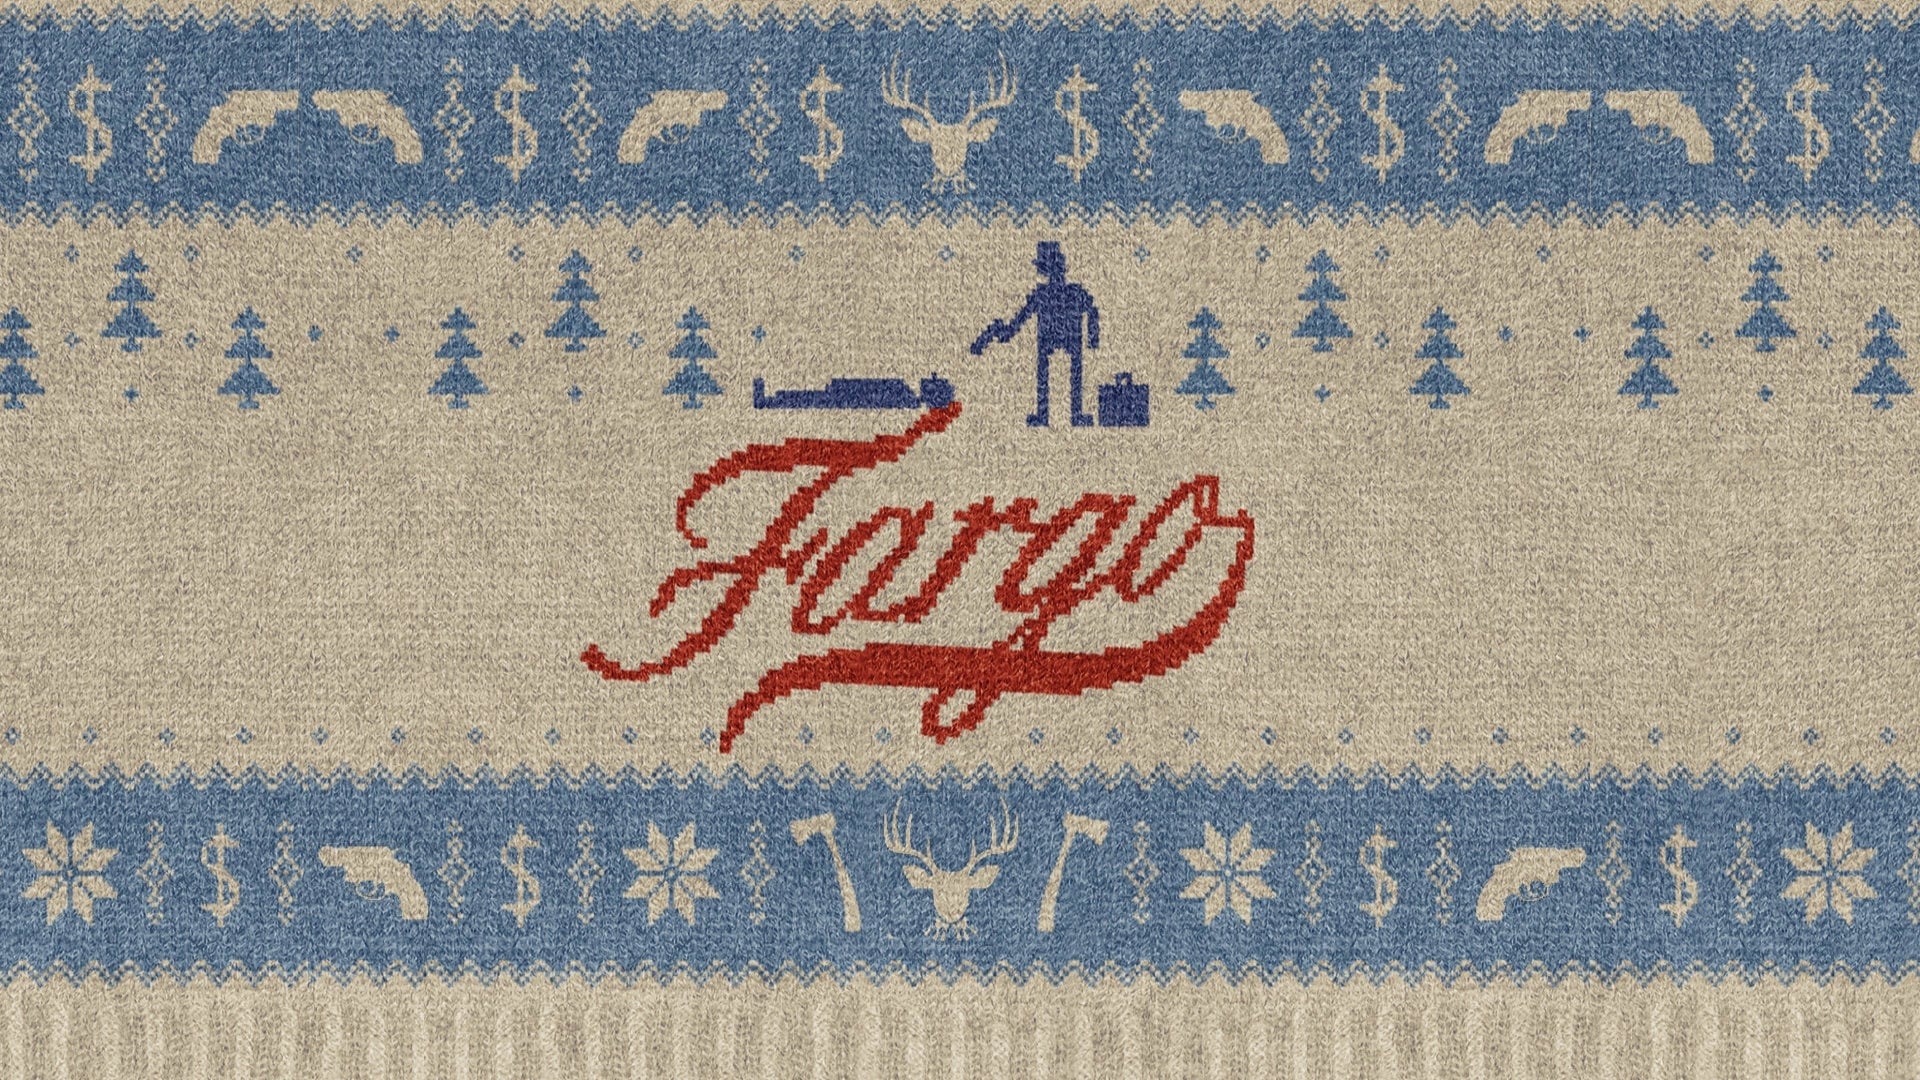 Fargo - Season 5 Episode 10